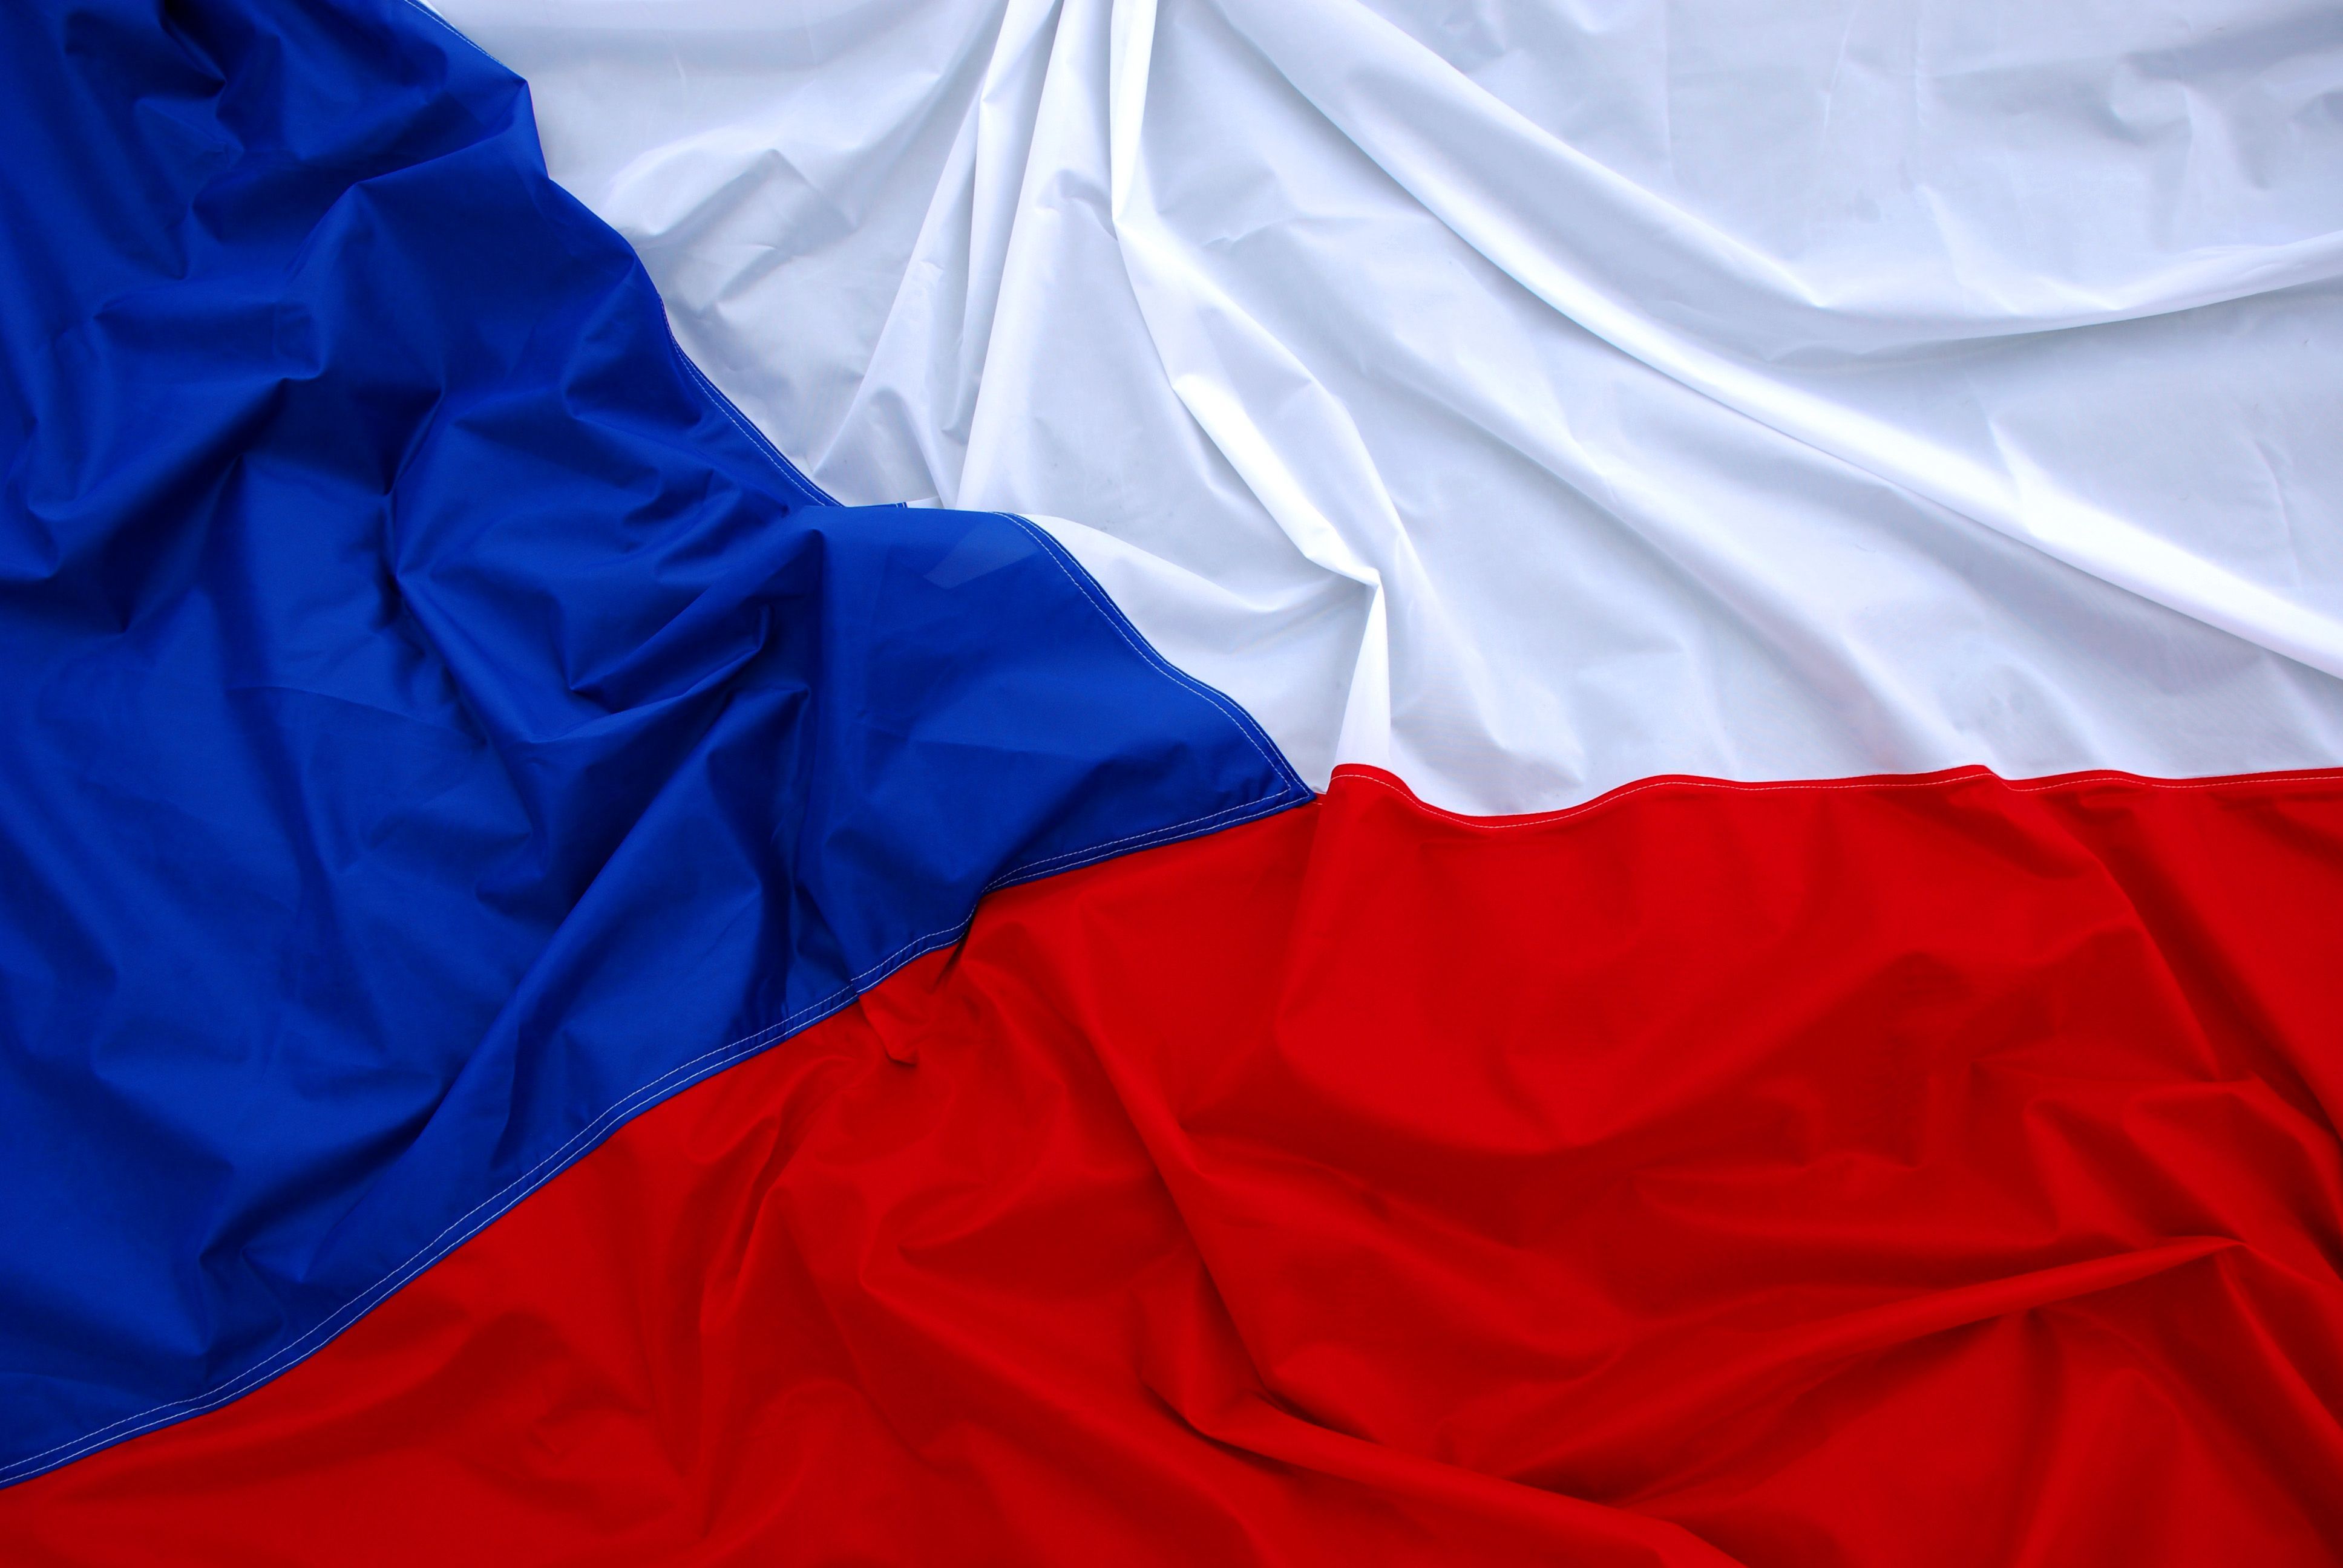 Скачать обои бесплатно Флаги, Разное, Флаг, Флаг Чешской Республики картинка на рабочий стол ПК